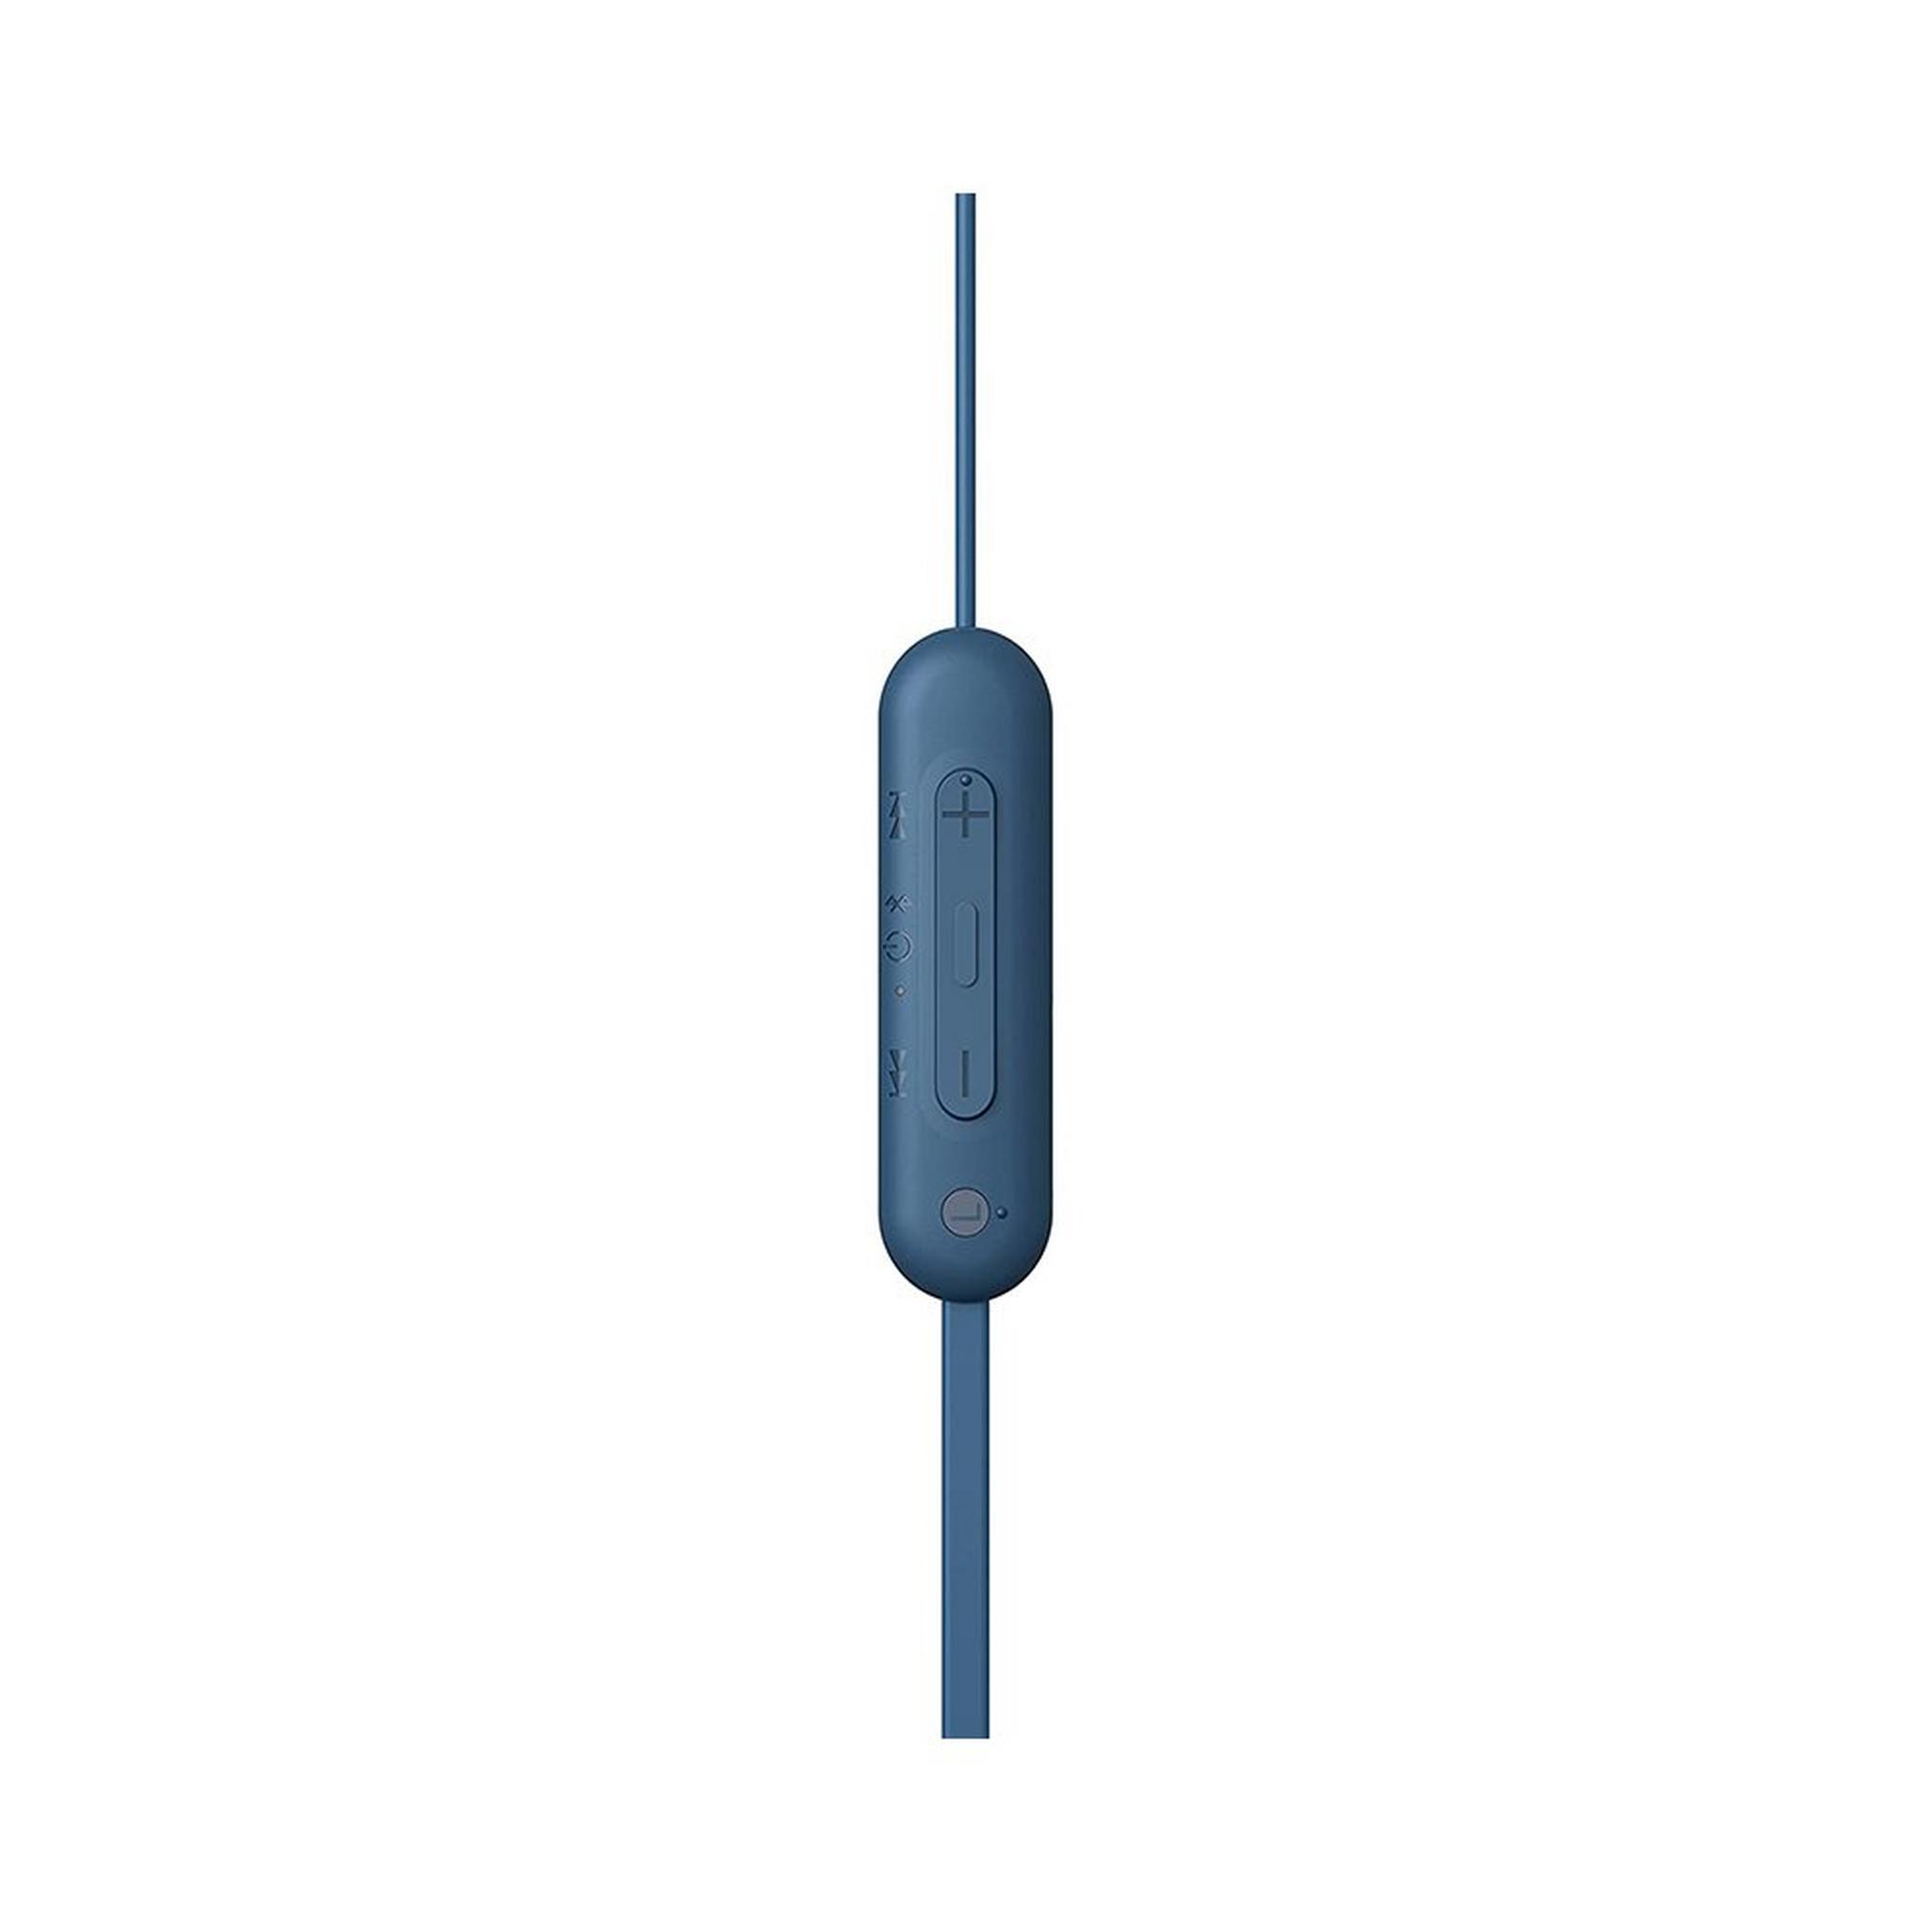 Sony Wireless In Ear Bluetooth Earphones With Mic, WI-C100/L - Blue